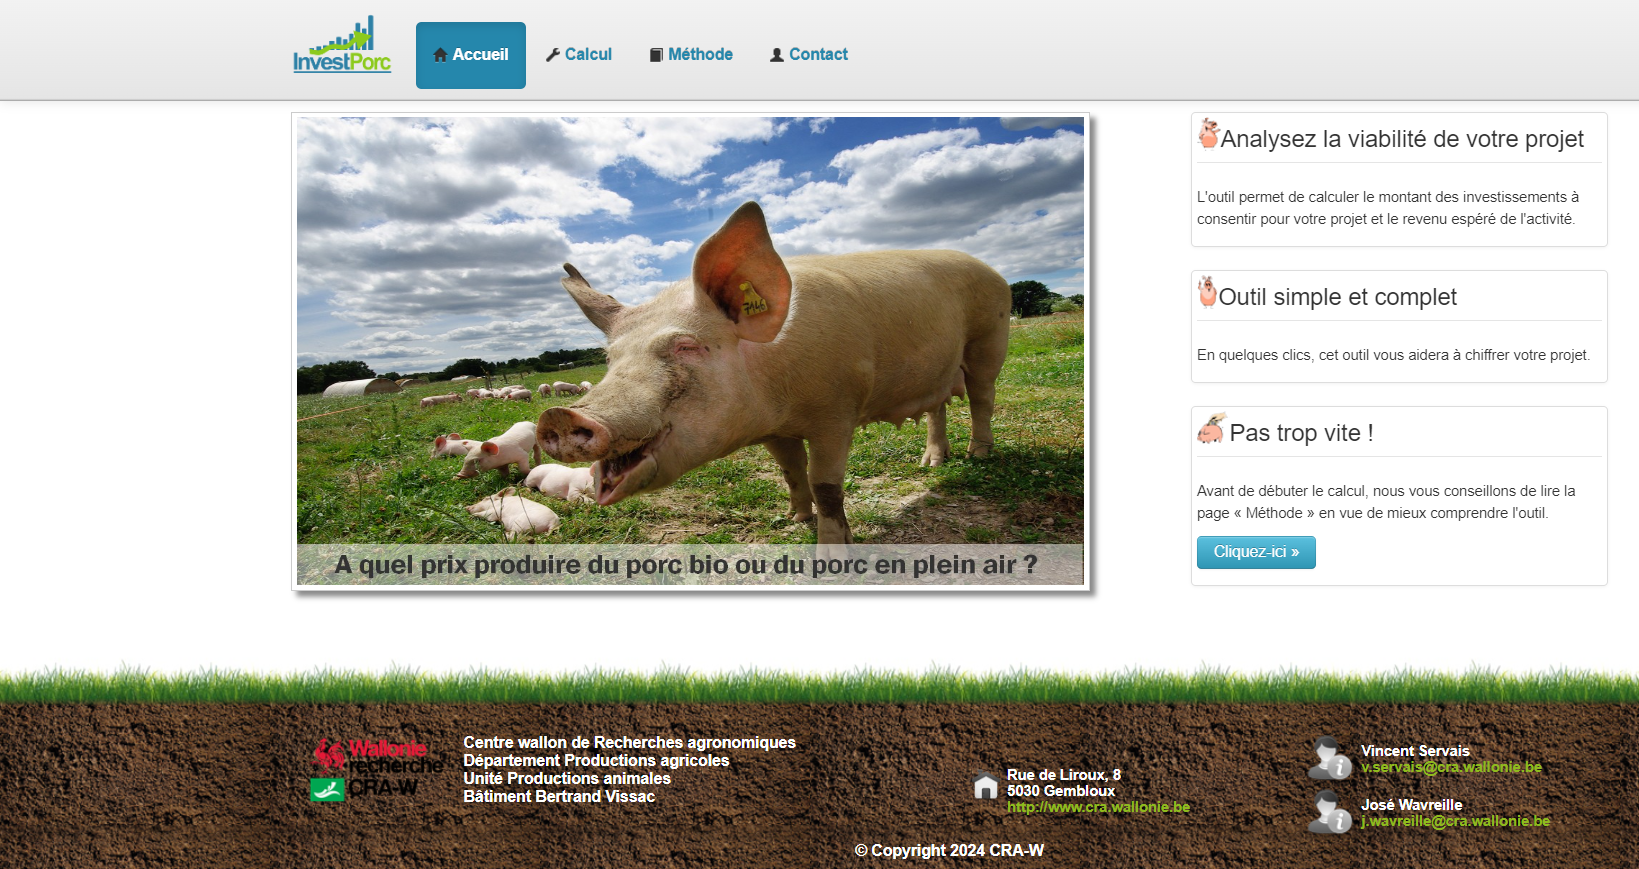 InvestPorc, wie viel kostet die Produktion von Bio-Schweinefleisch oder Freiland-Schweinefleisch?